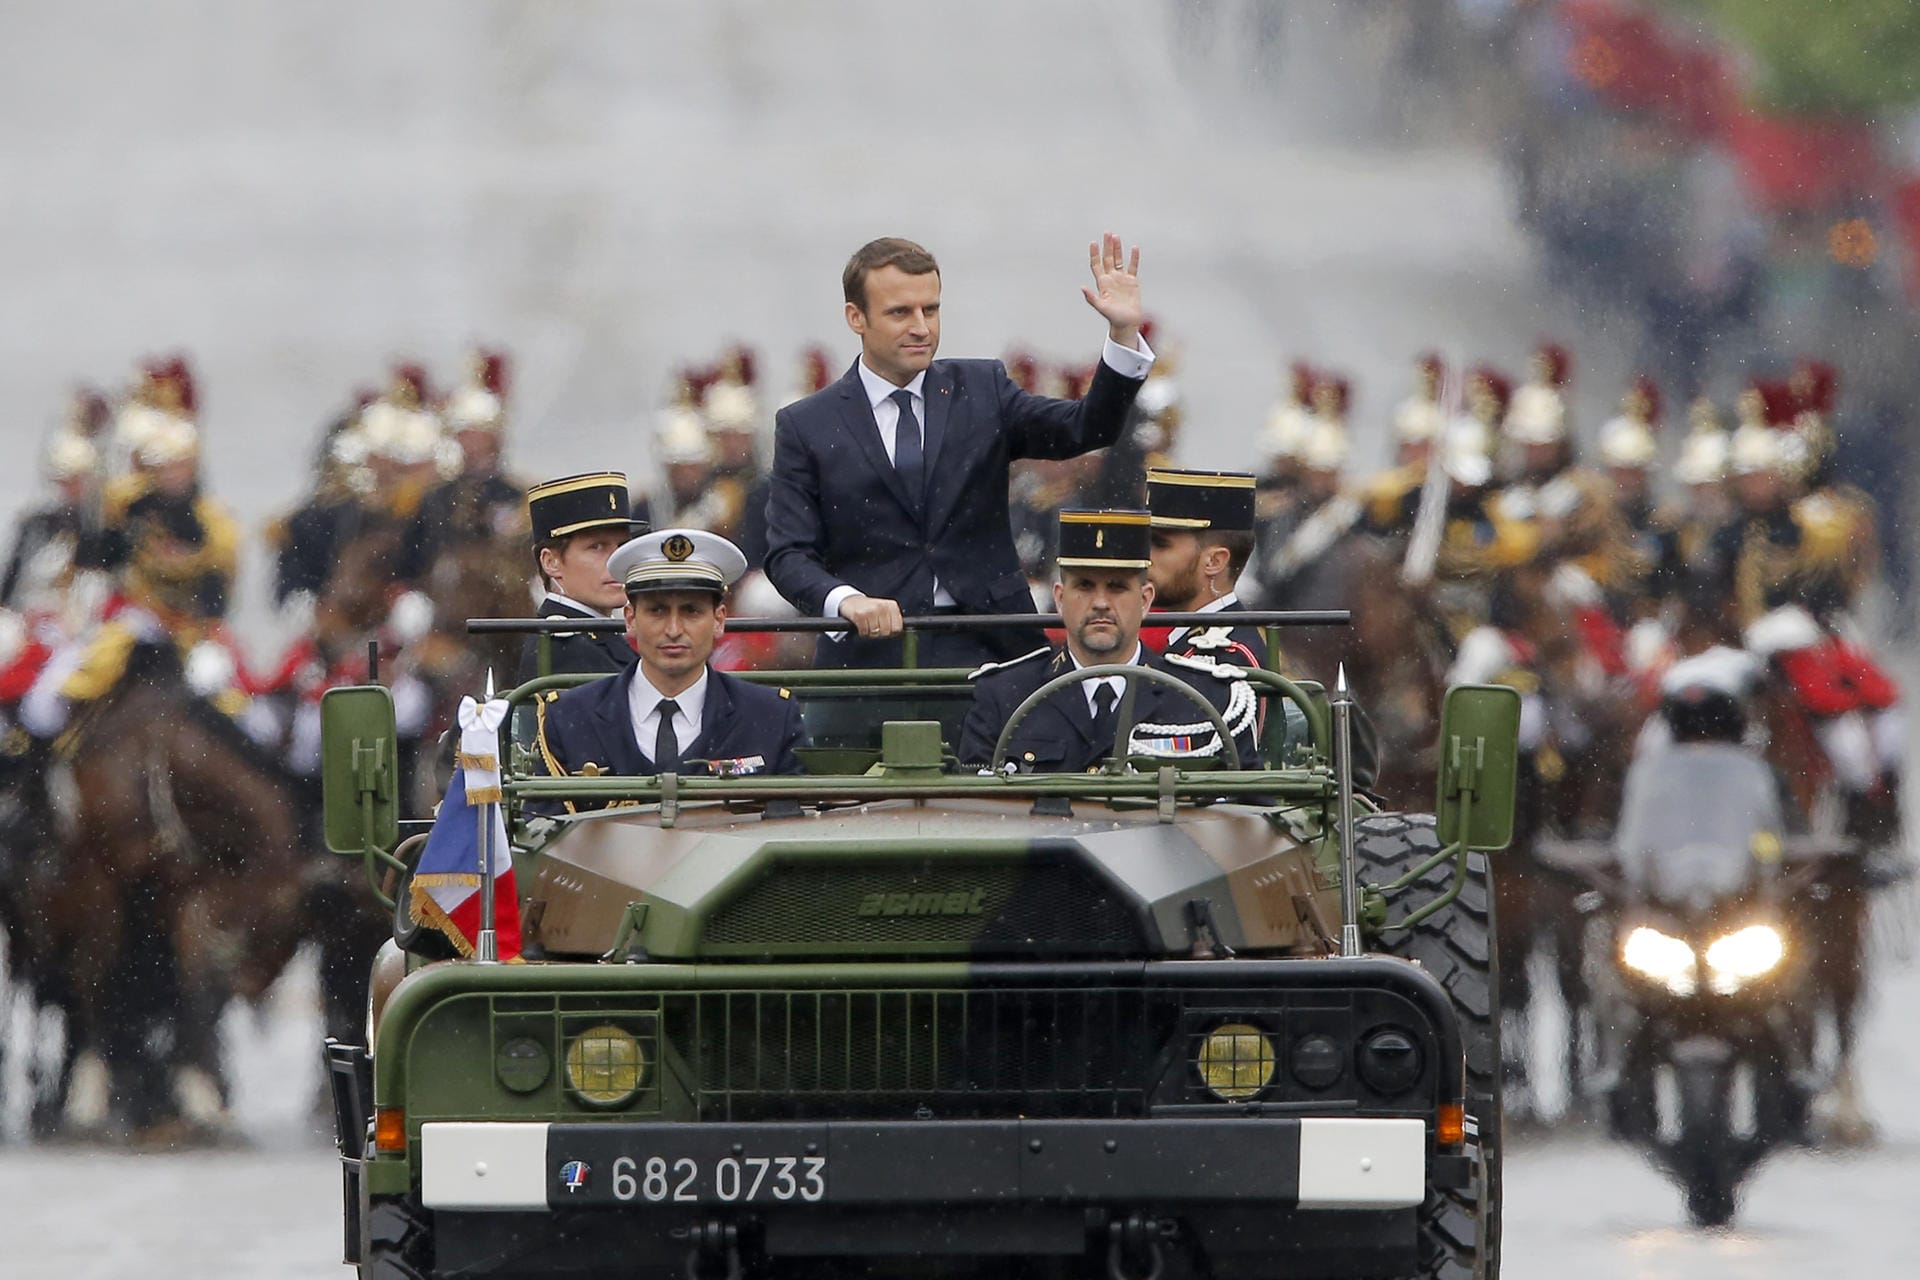 Emmanuel Macron wird in einem Militärfahrzeug bei seiner Amtseinführung am 14.Mai 2017 über die Champs-Elysees in Paris gefahren: Mit nur 39 Jahren ist Macron der jüngste Präsident aller Zeiten in Frankreich. Die Anspannung vor seiner ersten Rede als Staatsoberhaupt ist ihm anzusehen.